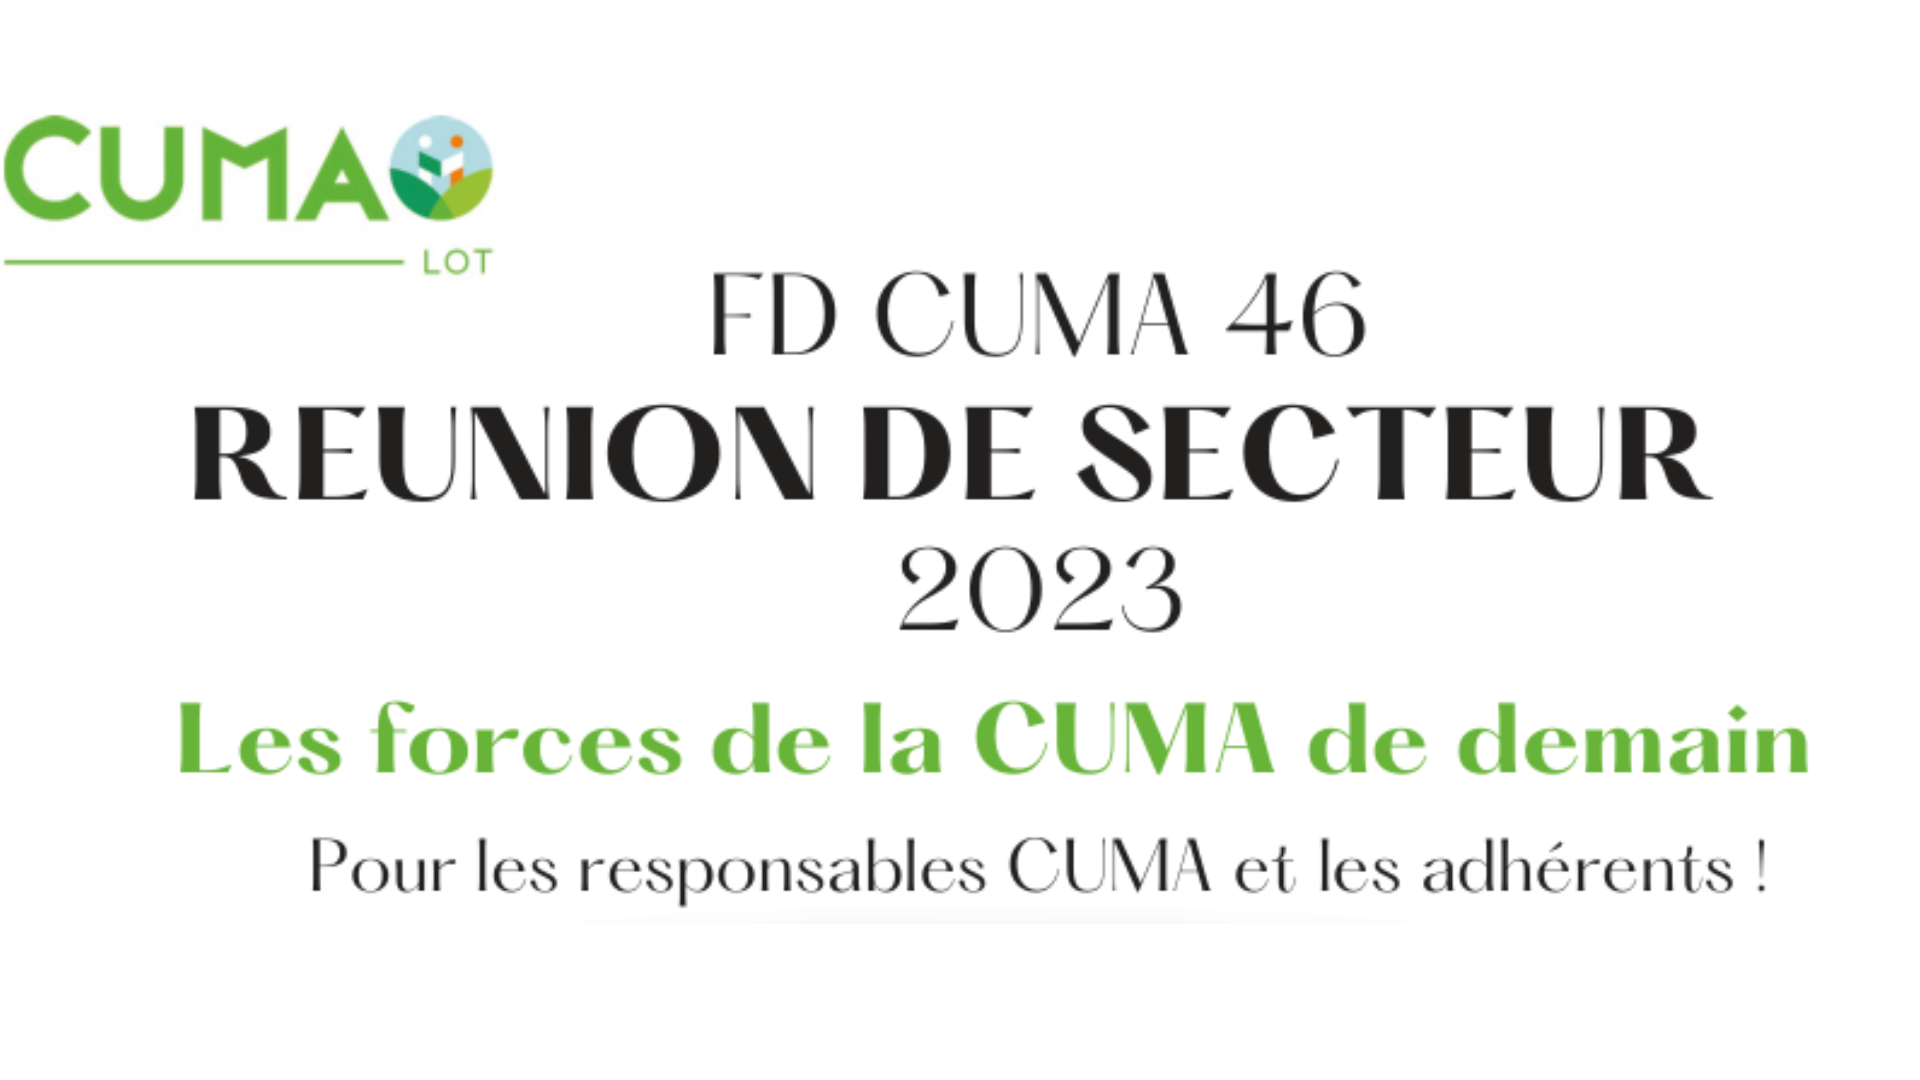 FD CUMA 46 : Plusieurs réunions de secteur en Février